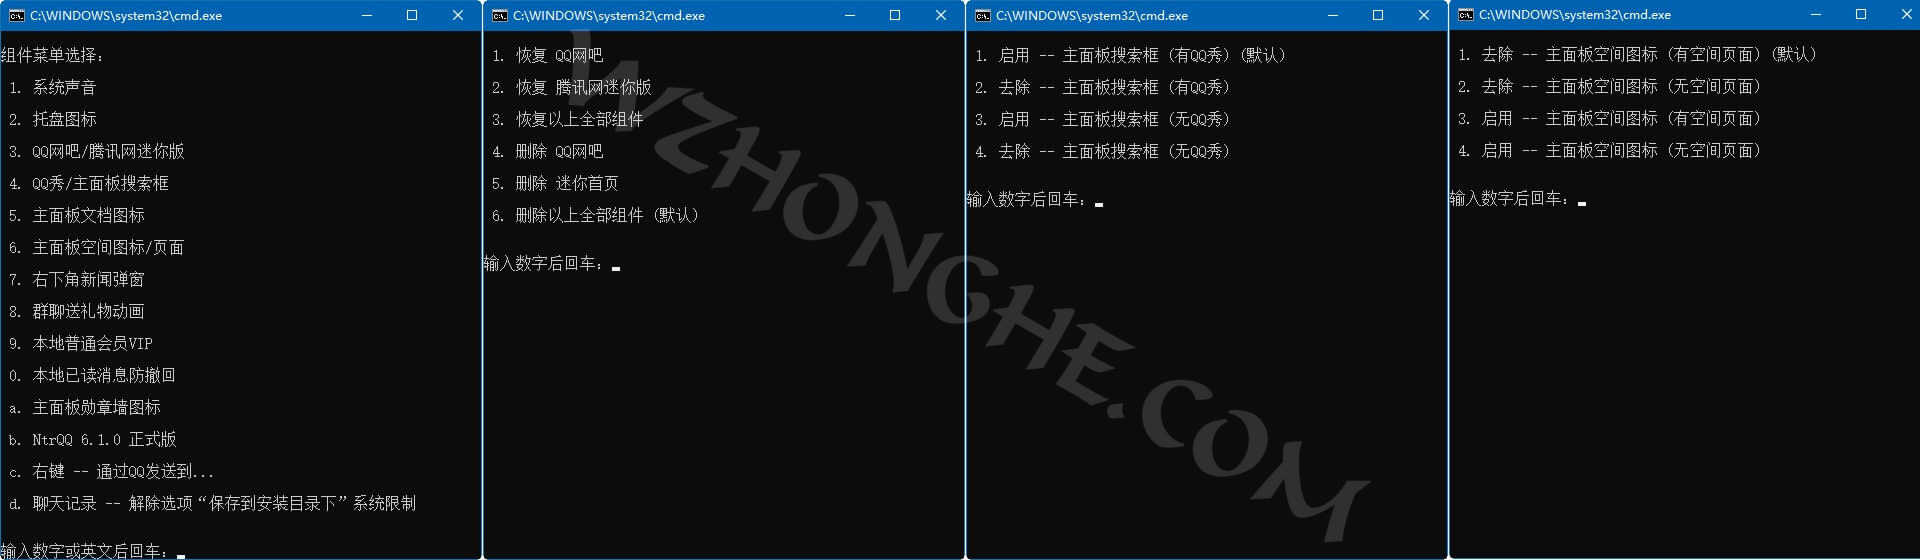 腾讯QQ Dreamcast 去广告版 - 无中和wzhonghe.com -3